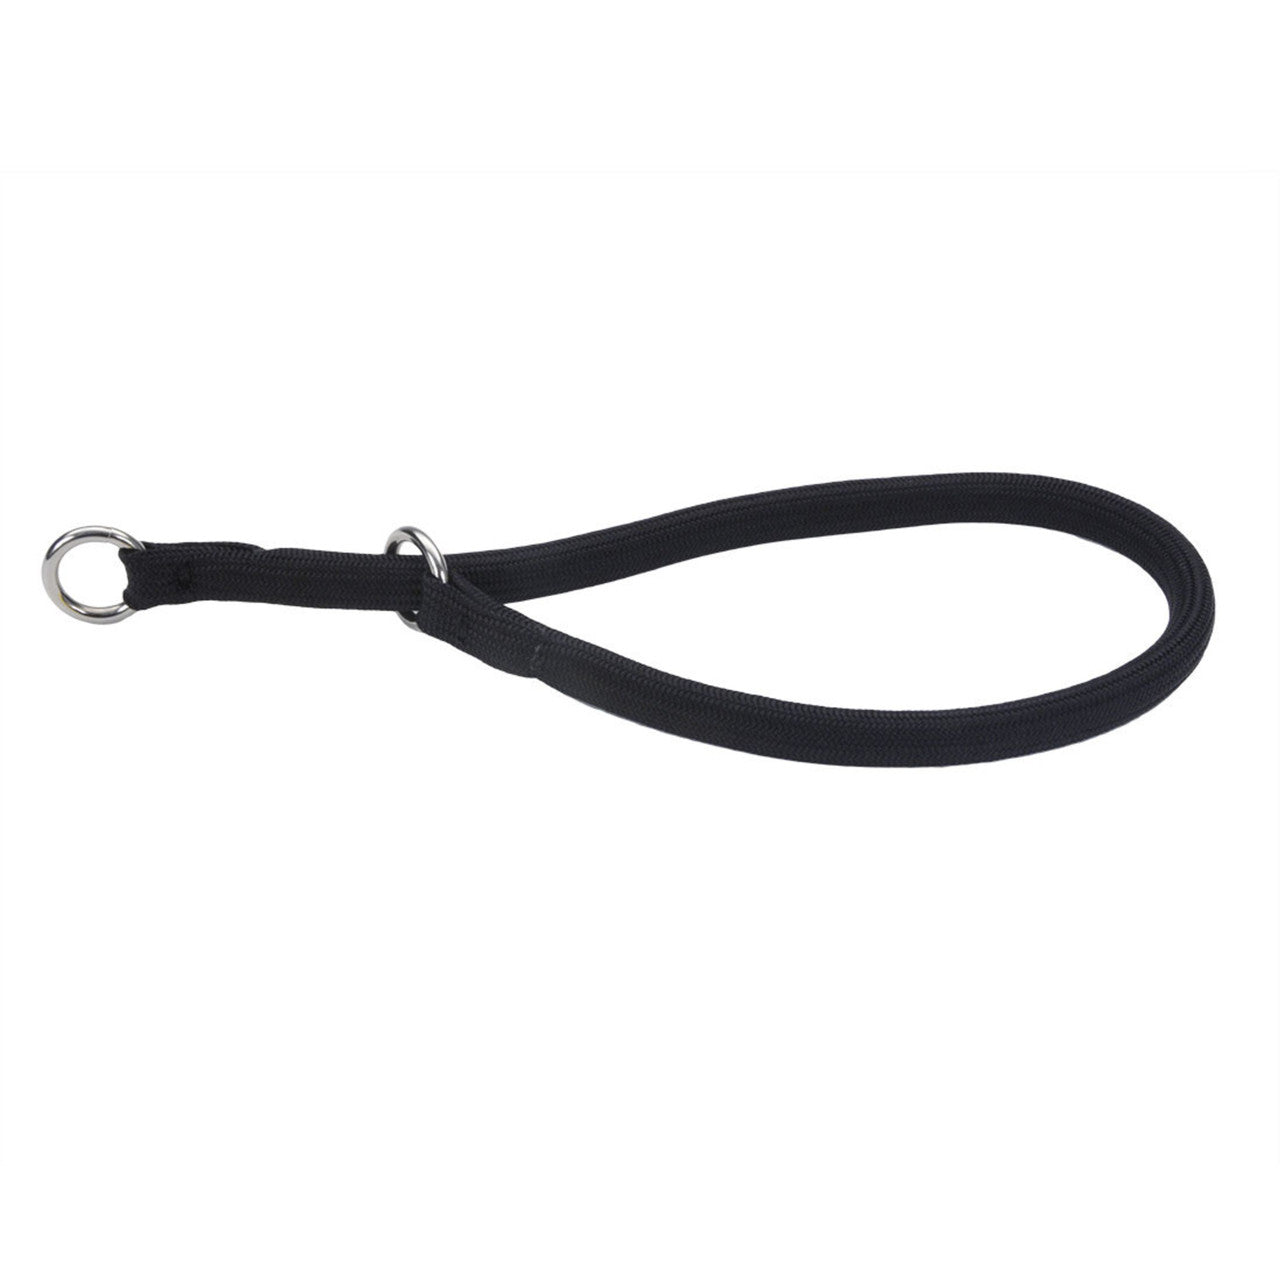 Coastal Round Nylon Training Dog Collar Black 3/8 in x 22 in